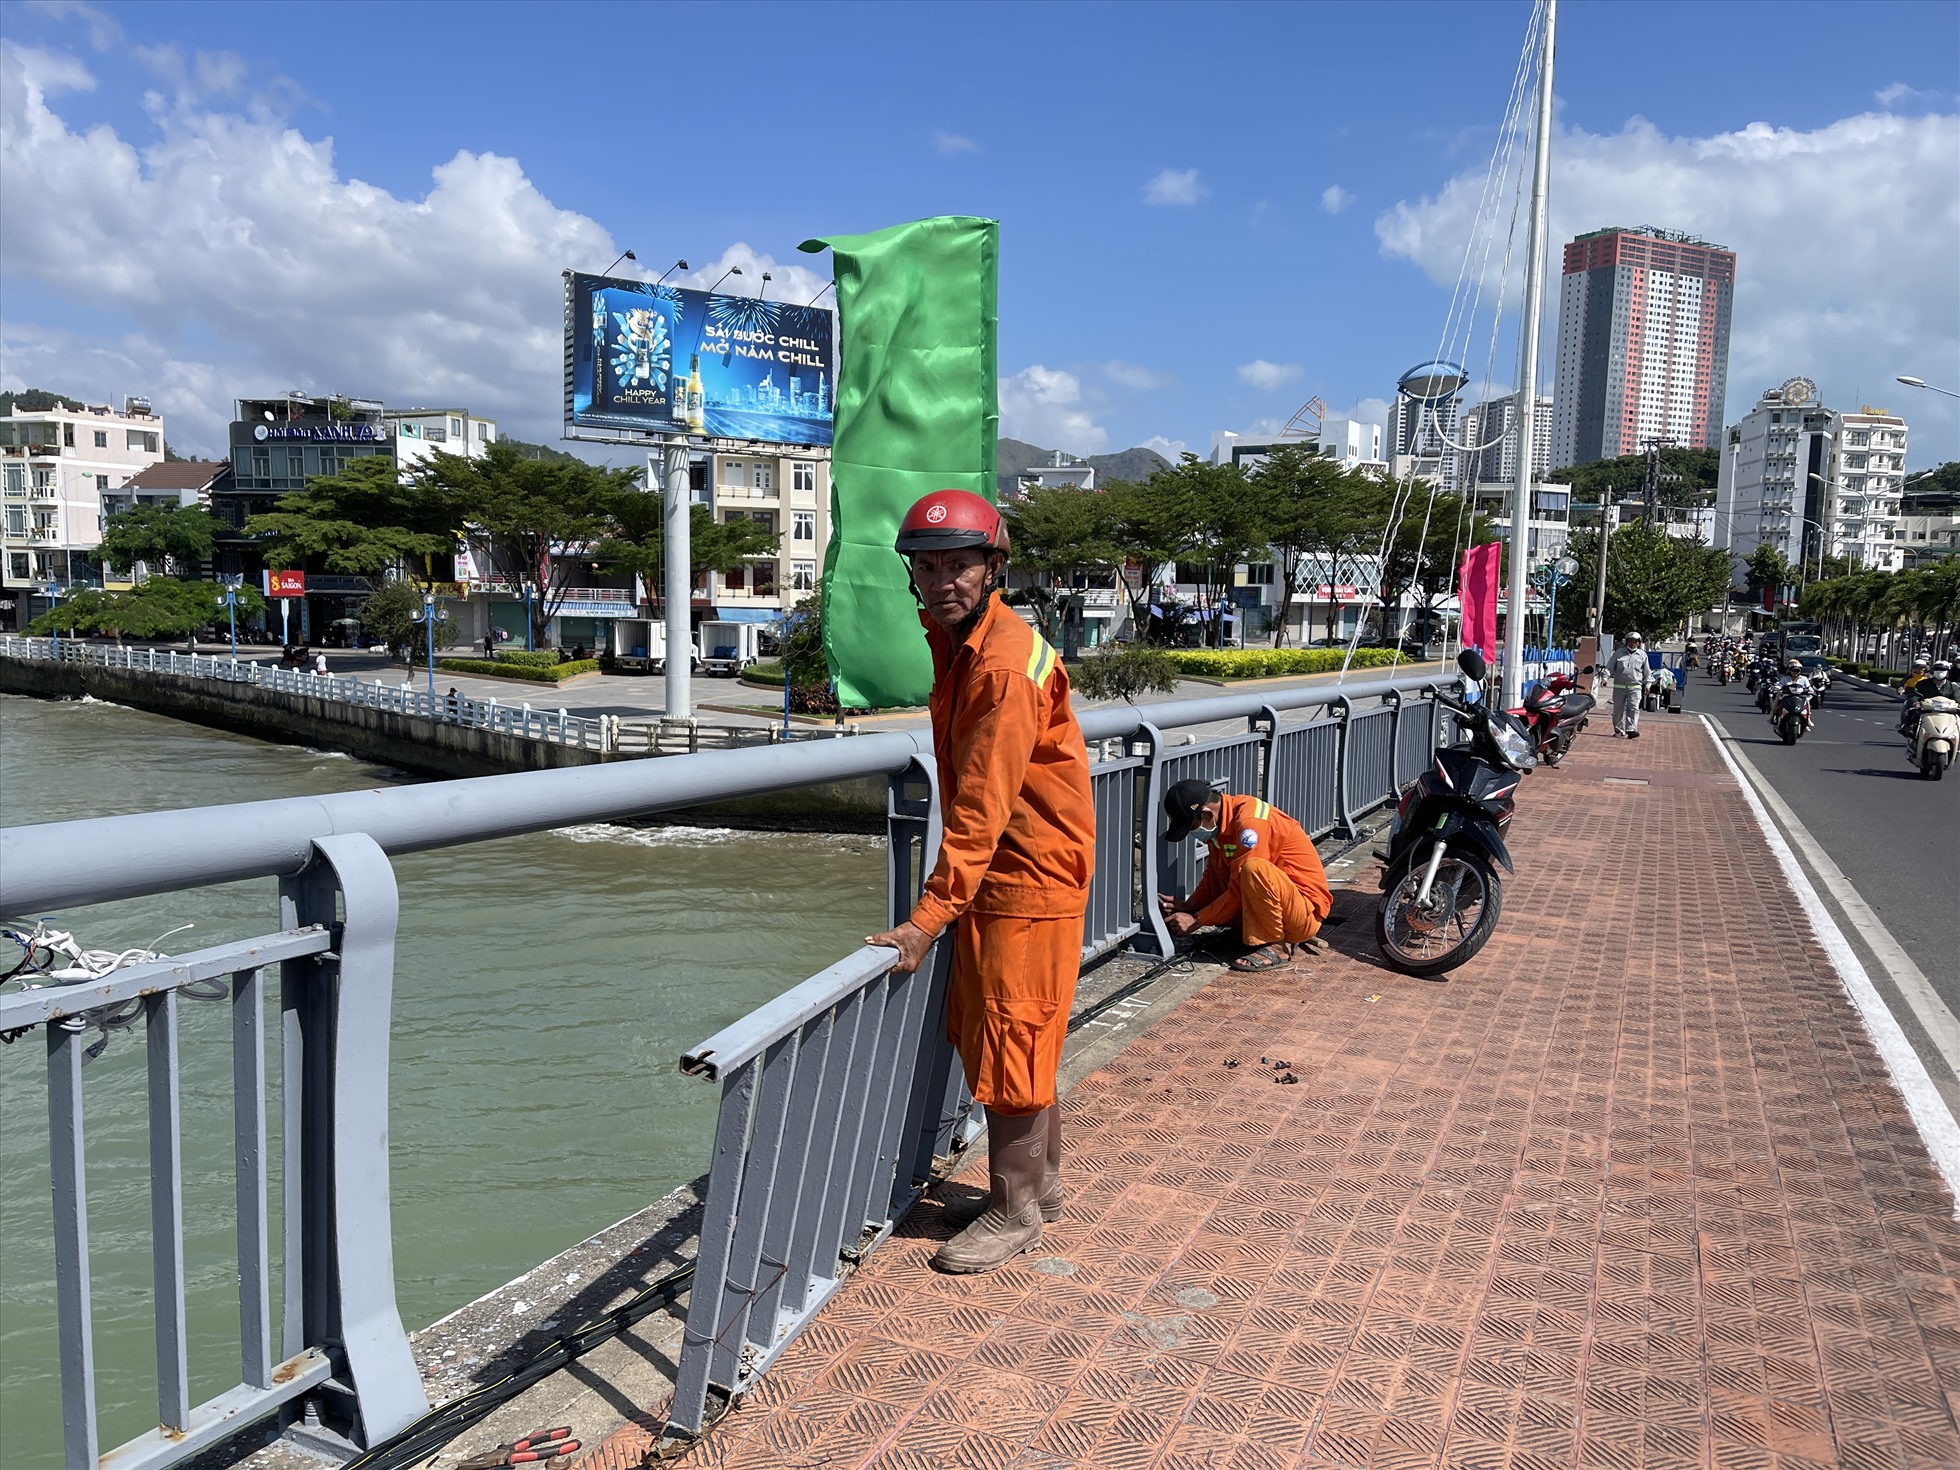 Lang cang trên cầu Trần Phú xuống cấp nên công nhân dựng biển báo, tổ chức thay mới. Ảnh: Hữu Long